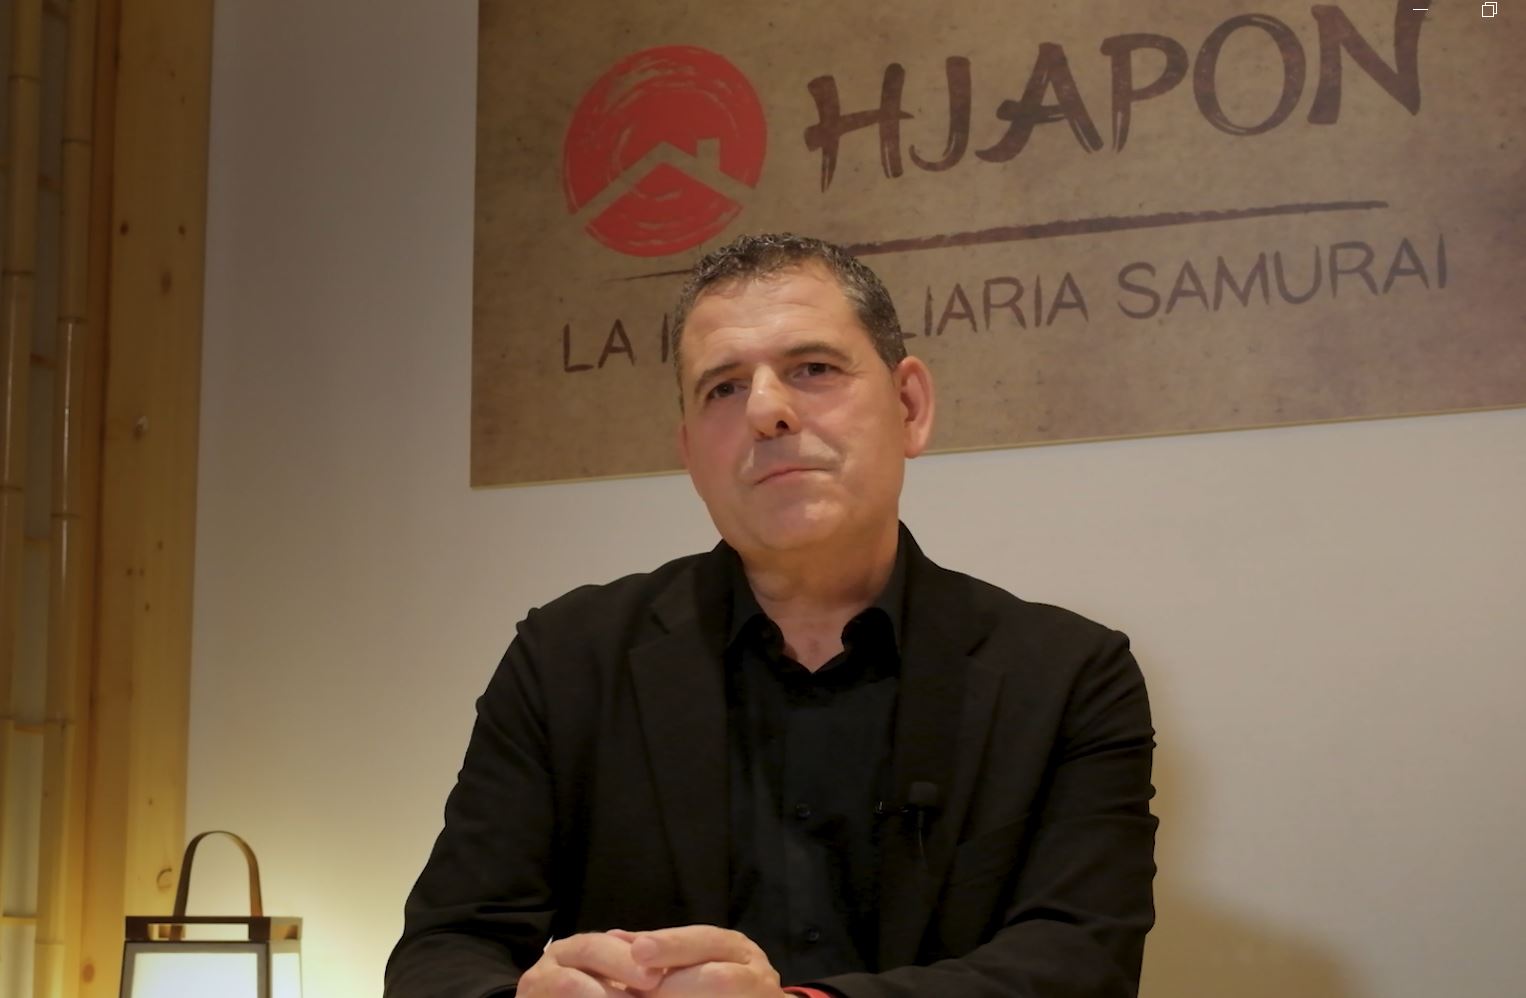 PROTAGONISTAS CEJE –  Entrevistamos a Marcelo Japon CEO y Fundador de HJAPON